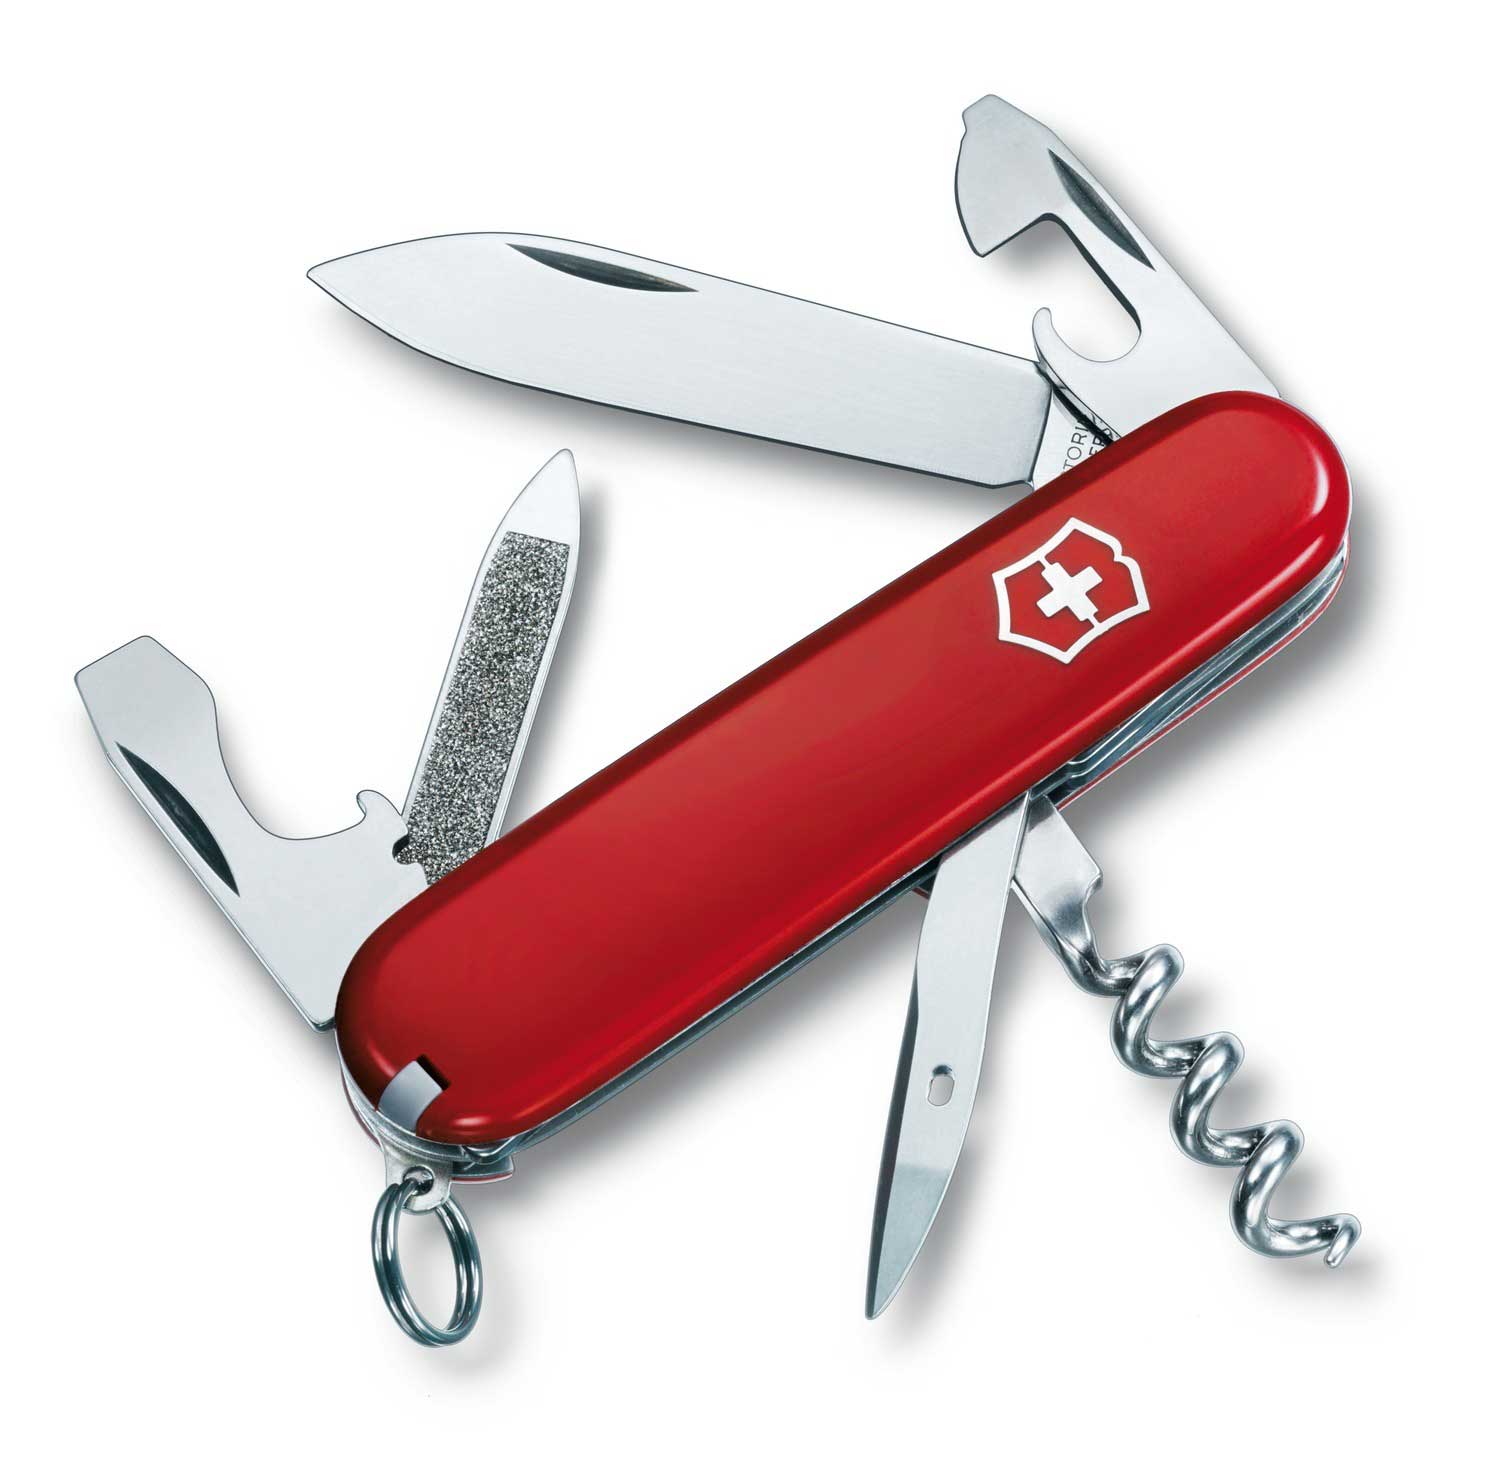 Нож Victorinox Sportsman, 84 мм, 13 функций, красный многофункциональный тактический складной нож 980 benchmade для отдыха на природе безопасные спасательные карманные ножи edc инструмент